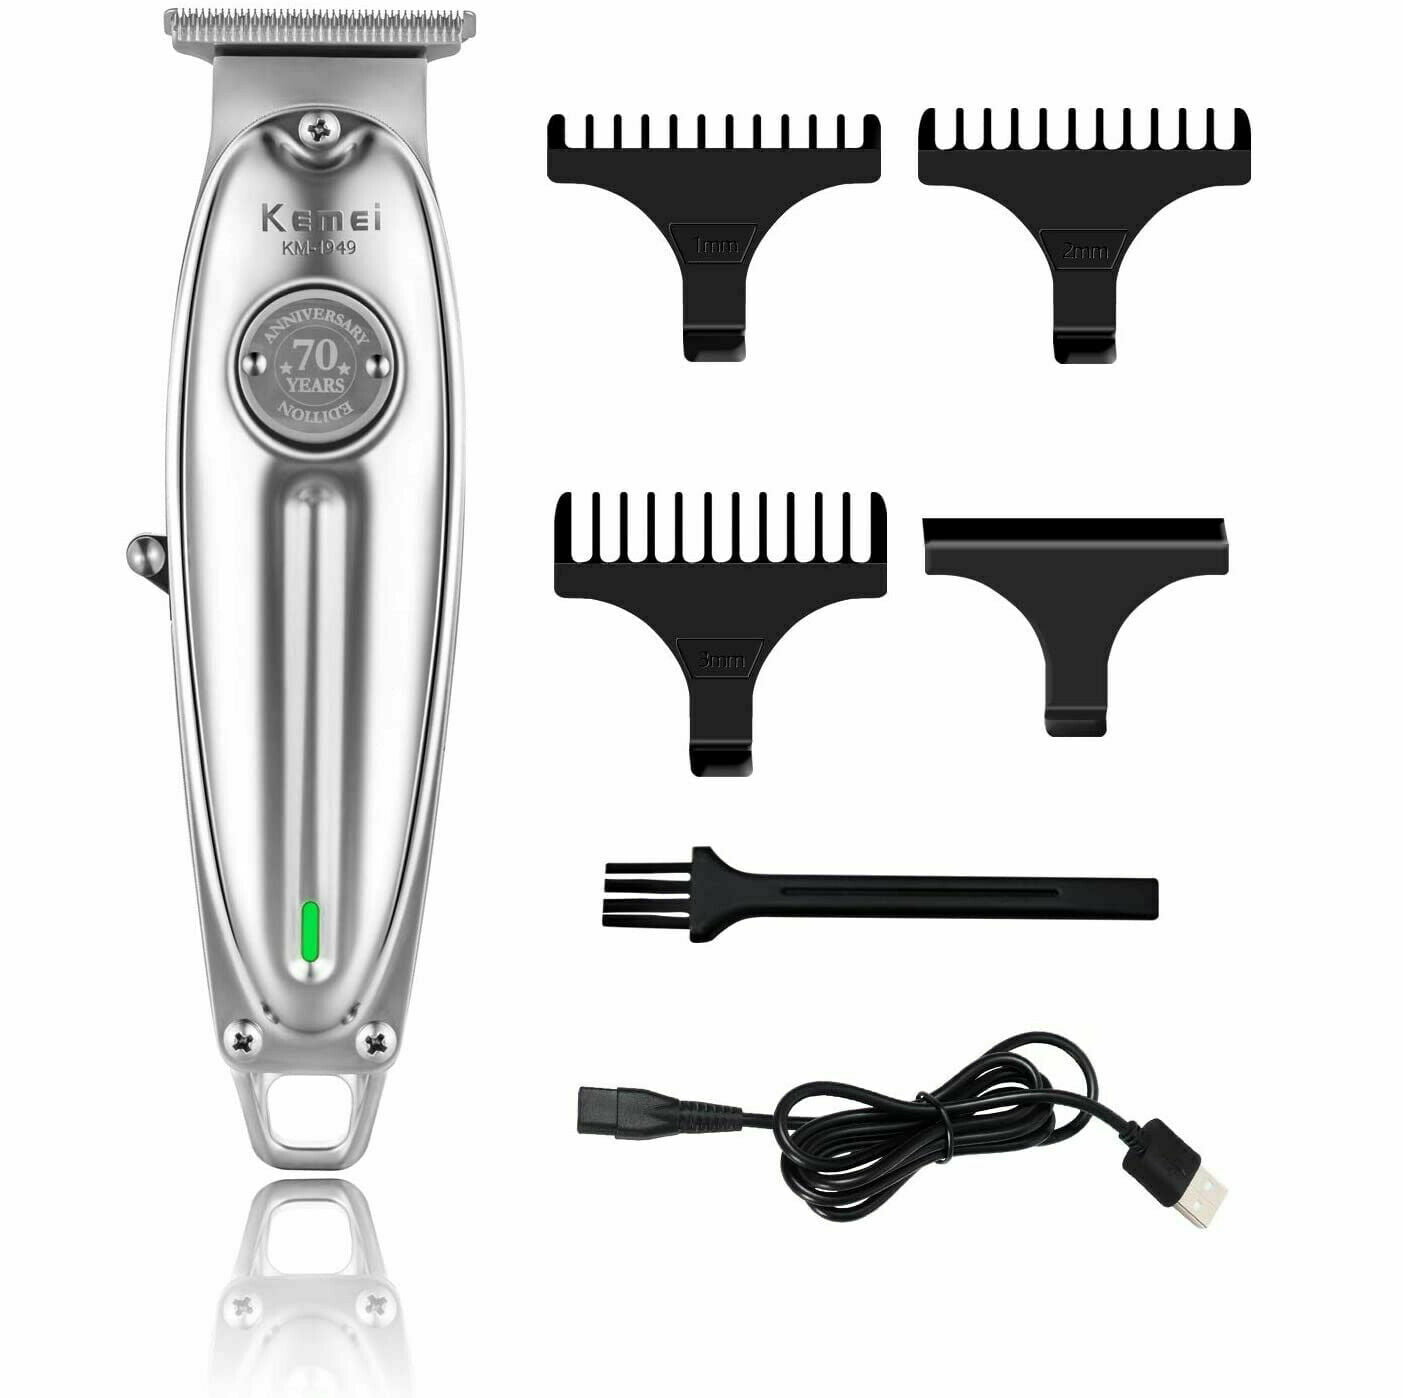 men's hair grooming tools